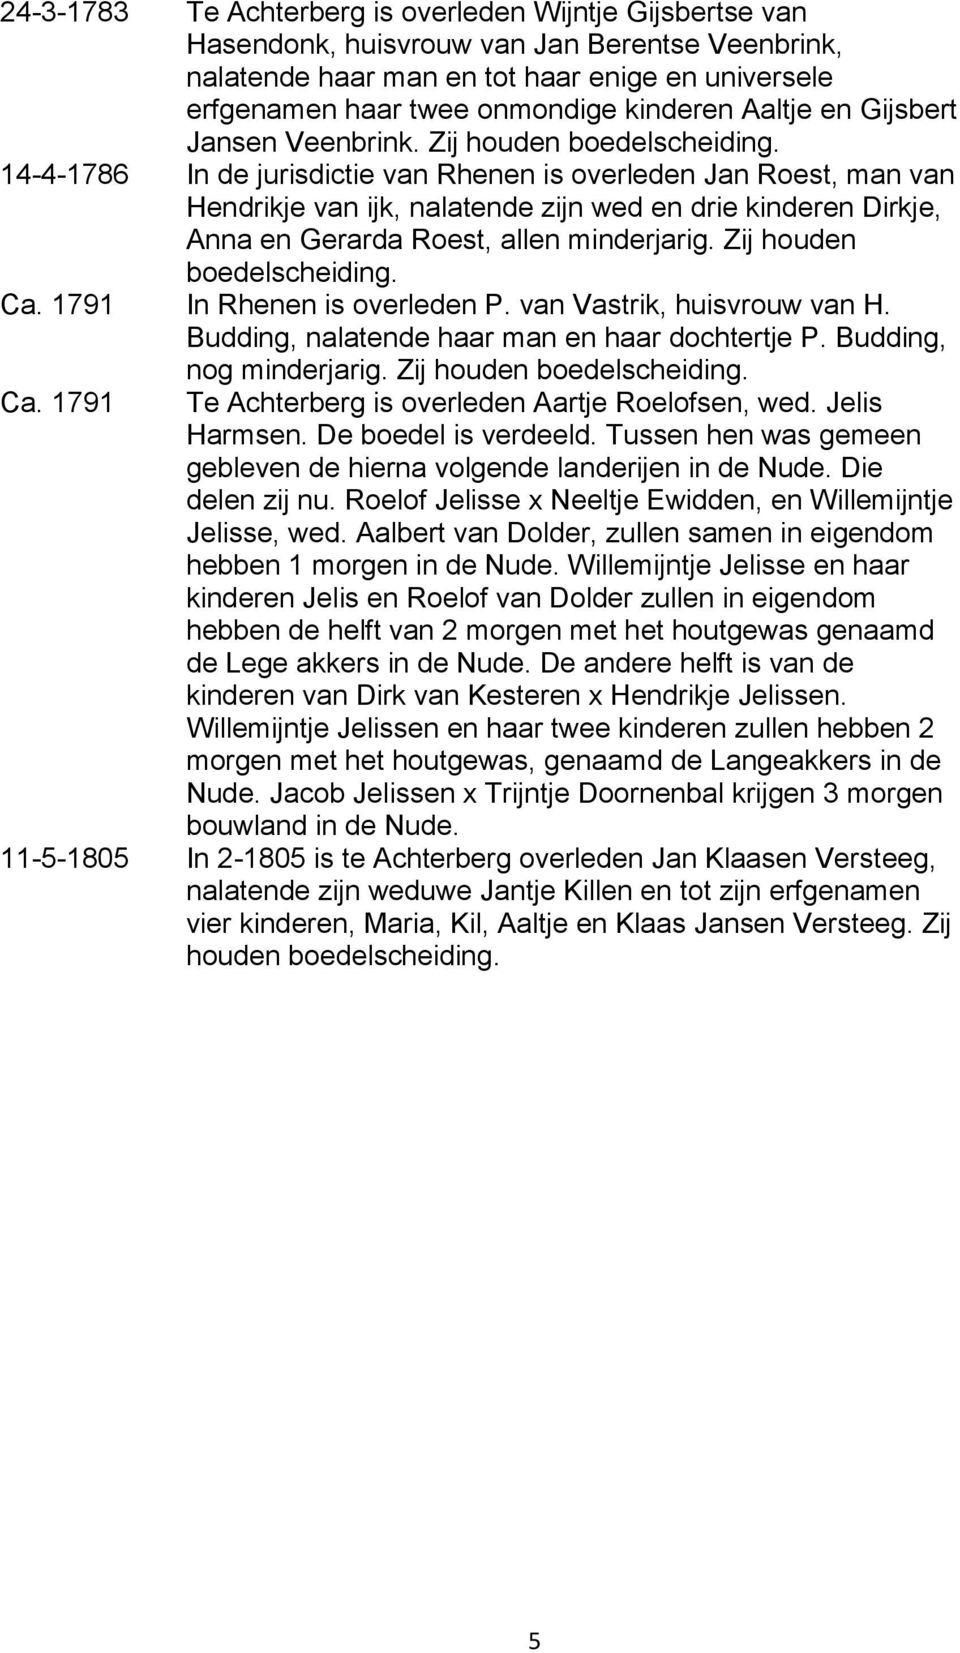 14-4-1786 In de jurisdictie van Rhenen is overleden Jan Roest, man van Hendrikje van ijk, nalatende zijn wed en drie kinderen Dirkje, Anna en Gerarda Roest, allen minderjarig.